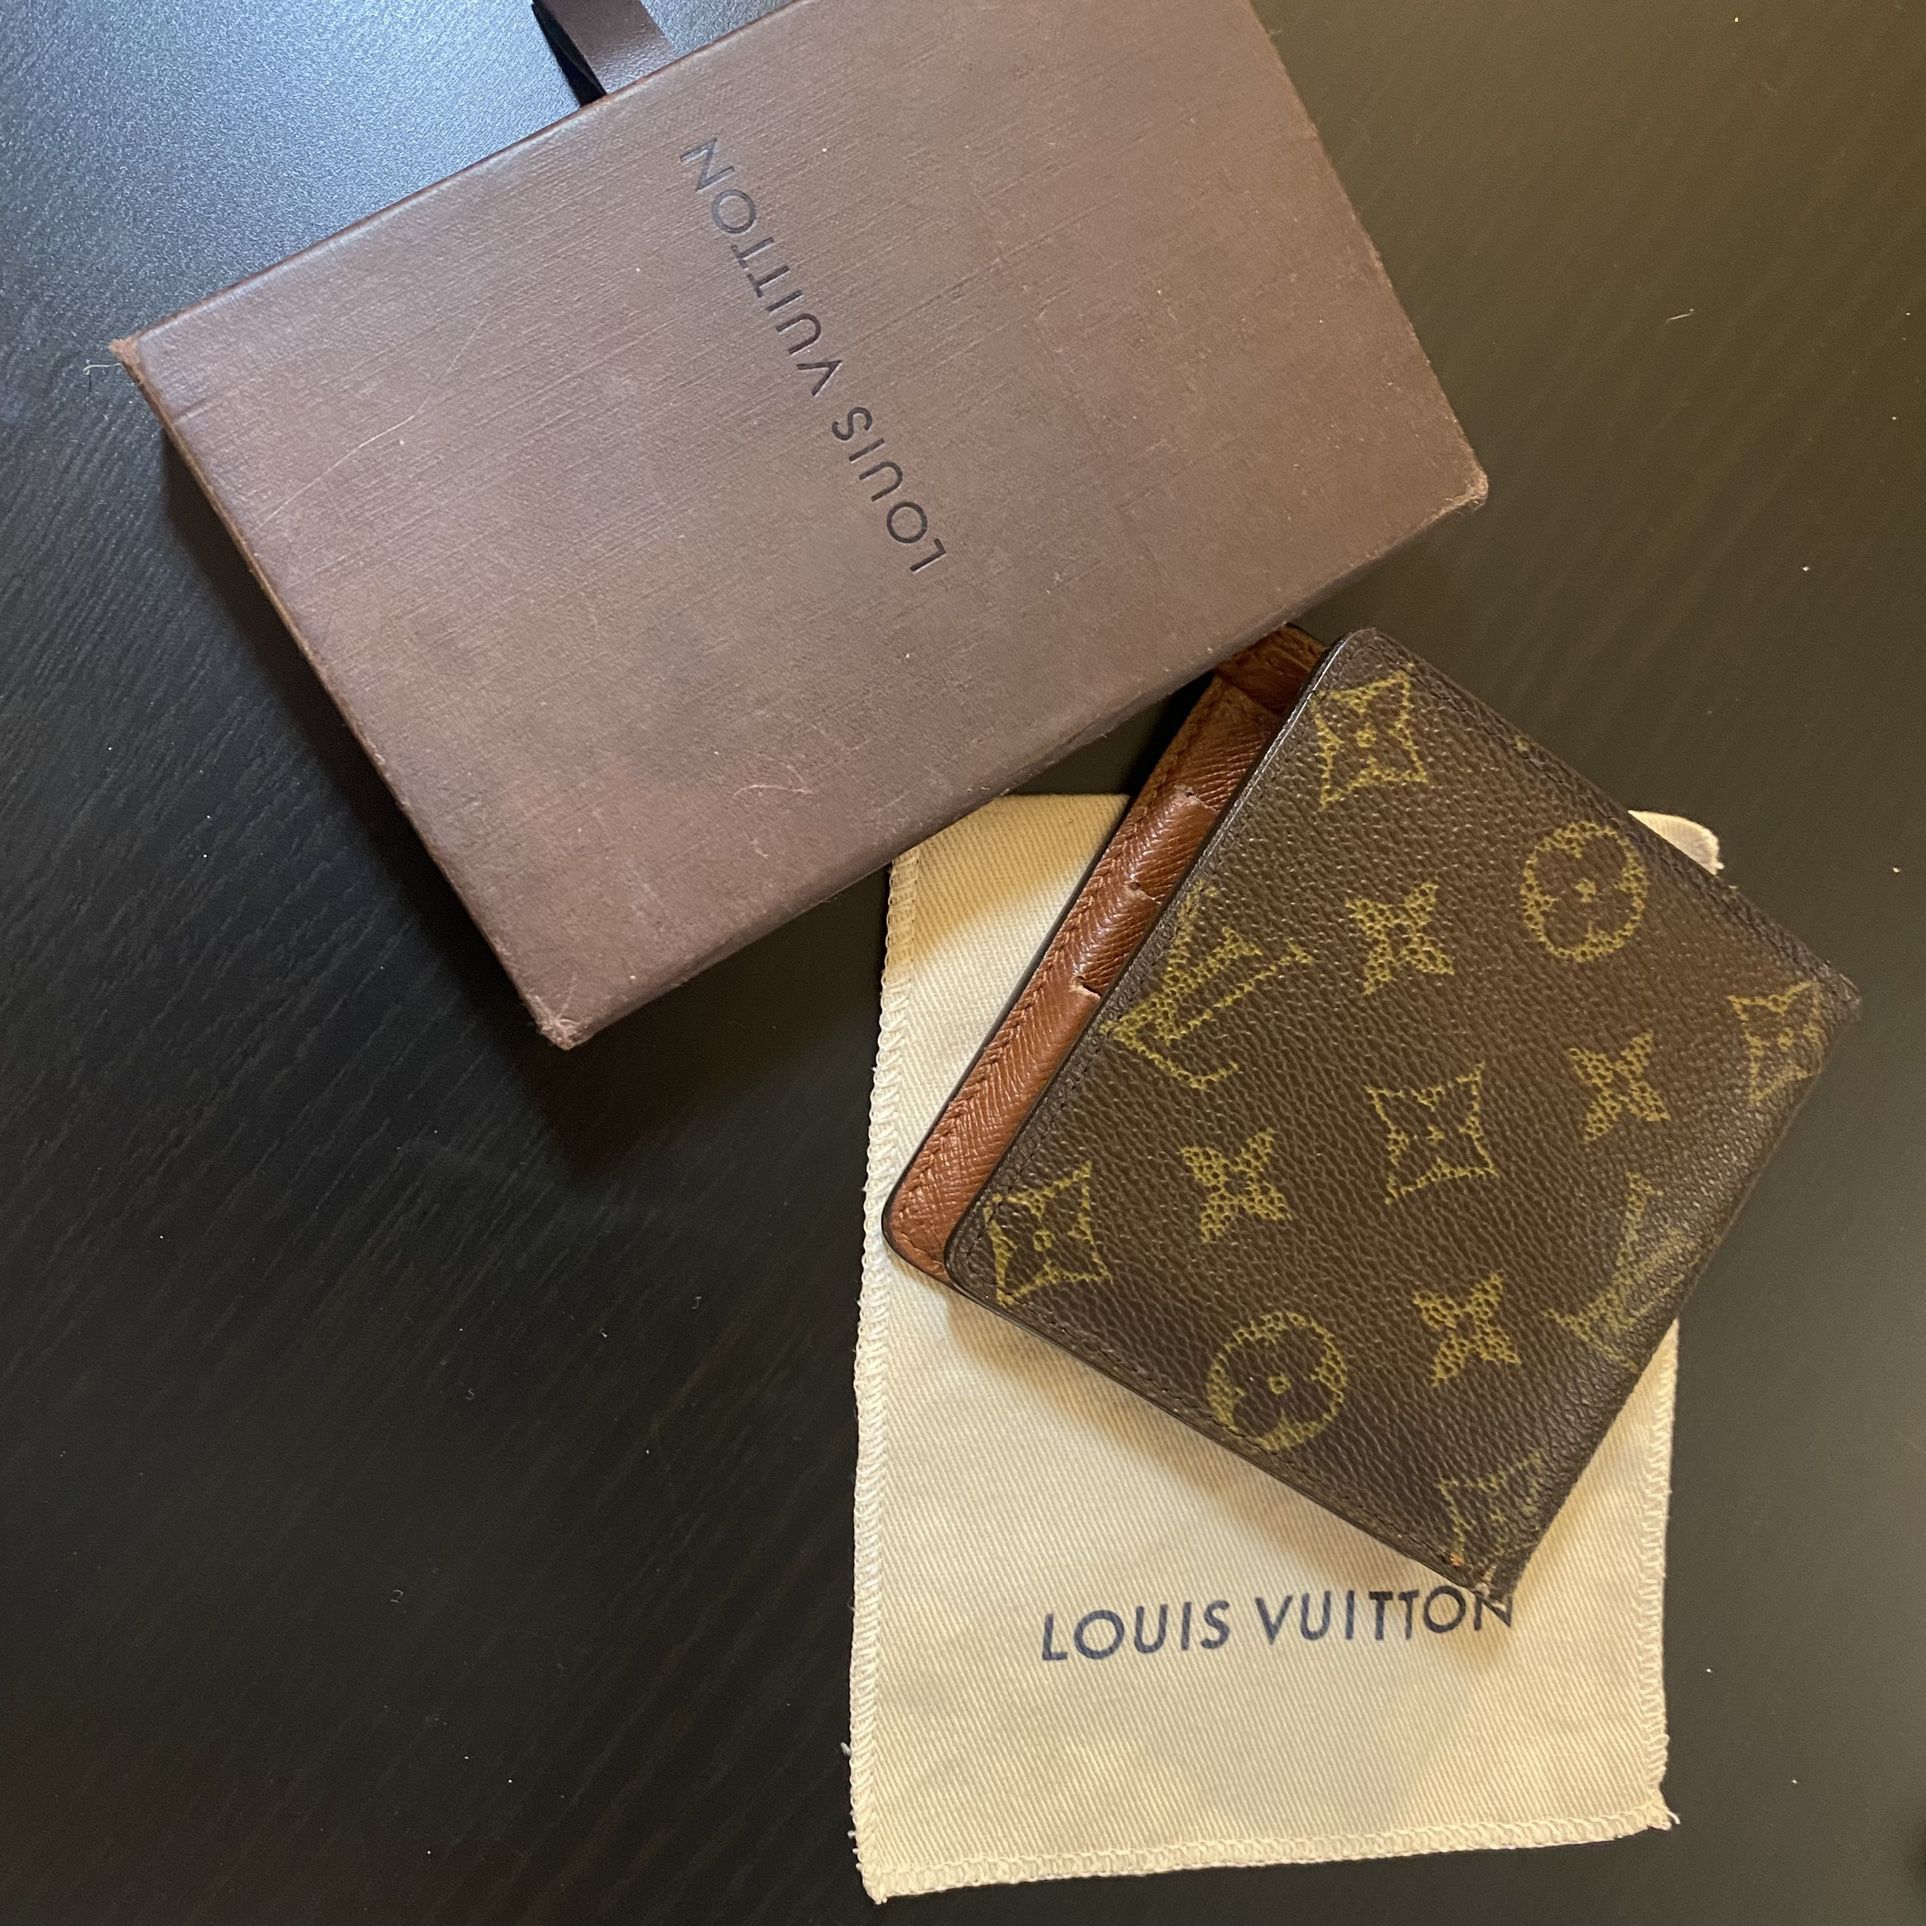 Sold at Auction: Louis Vuitton Men's Monogram Bifold Wallet